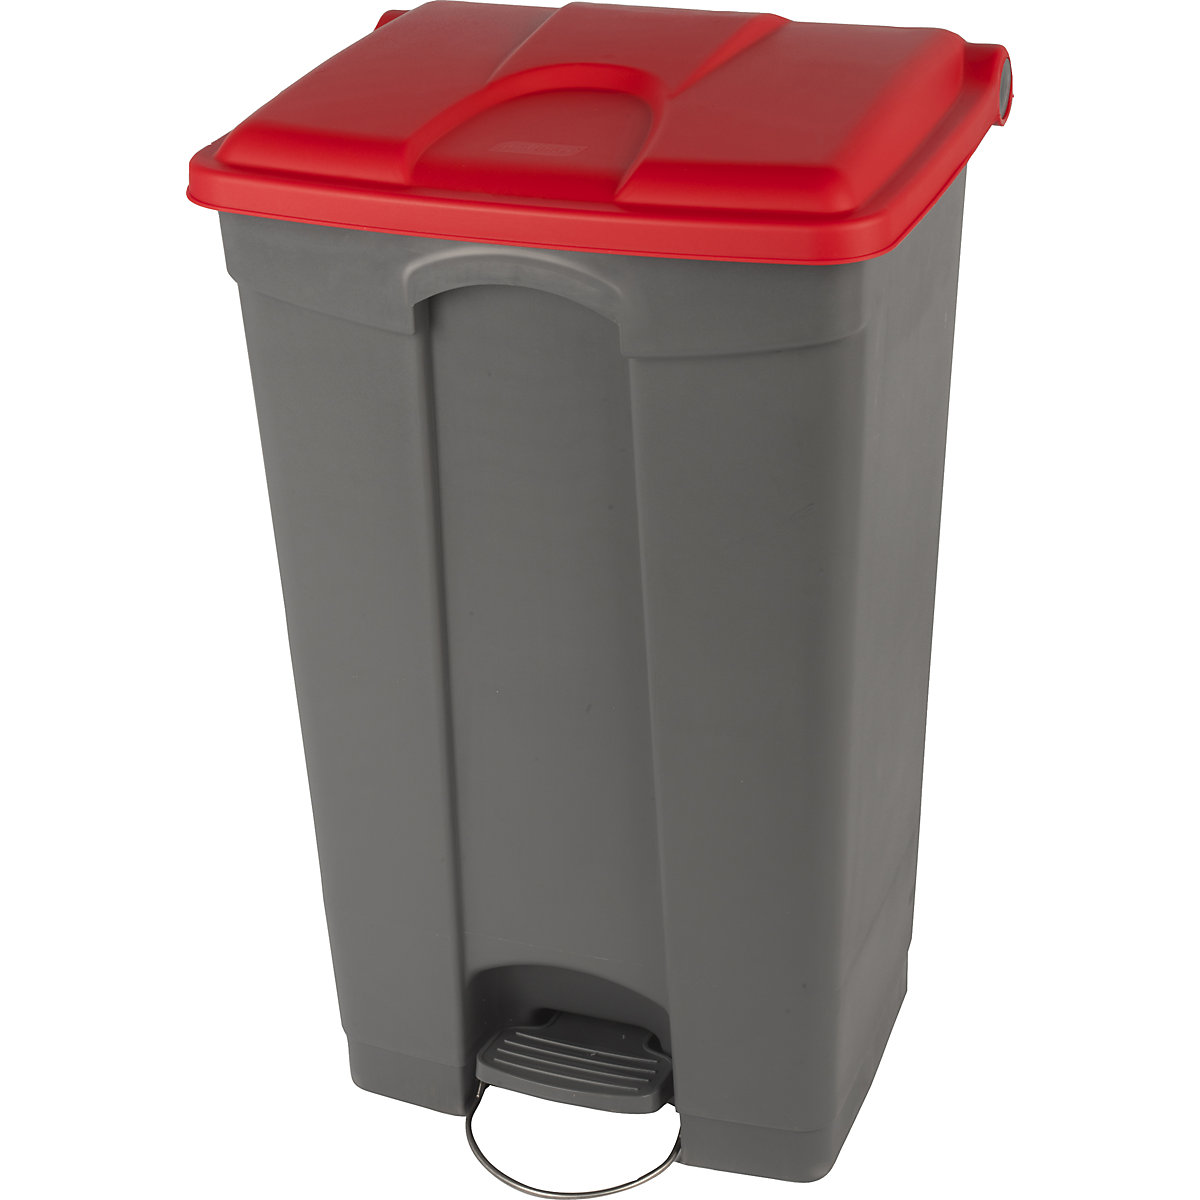 Nádoba na odpad s pedálem, objem 90 l, š x v x h 505 x 790 x 410 mm, šedá, červené víko-9